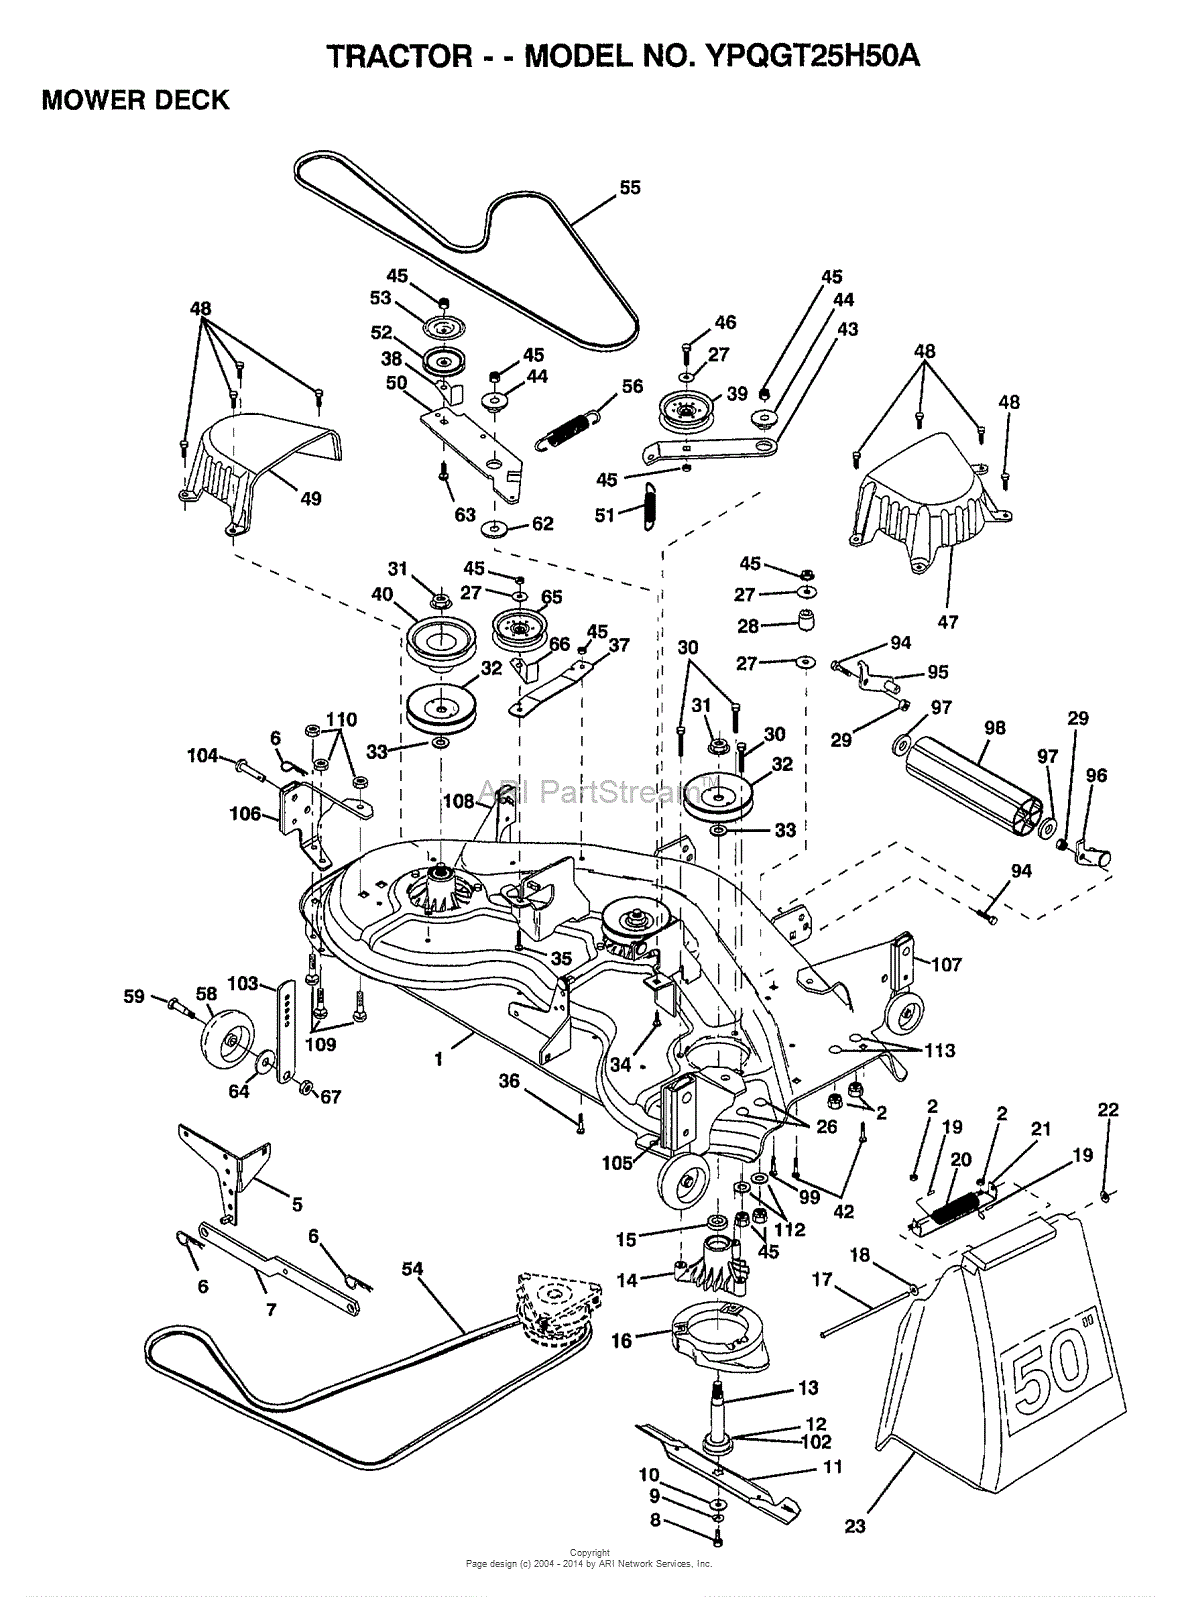 27 Craftsman 50 Inch Mower Deck Belt Diagram Wiring Diagram Ideas